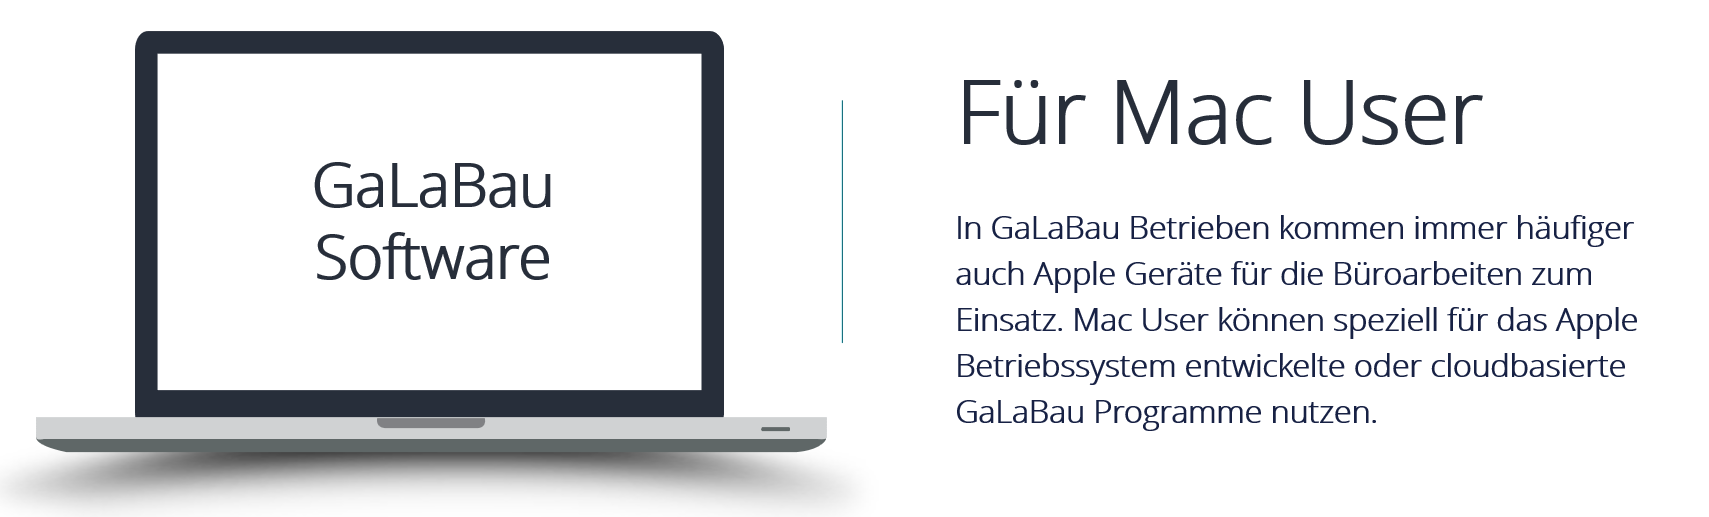 Beitragsbild - GaLaBau Softwareprogramme für Mac User